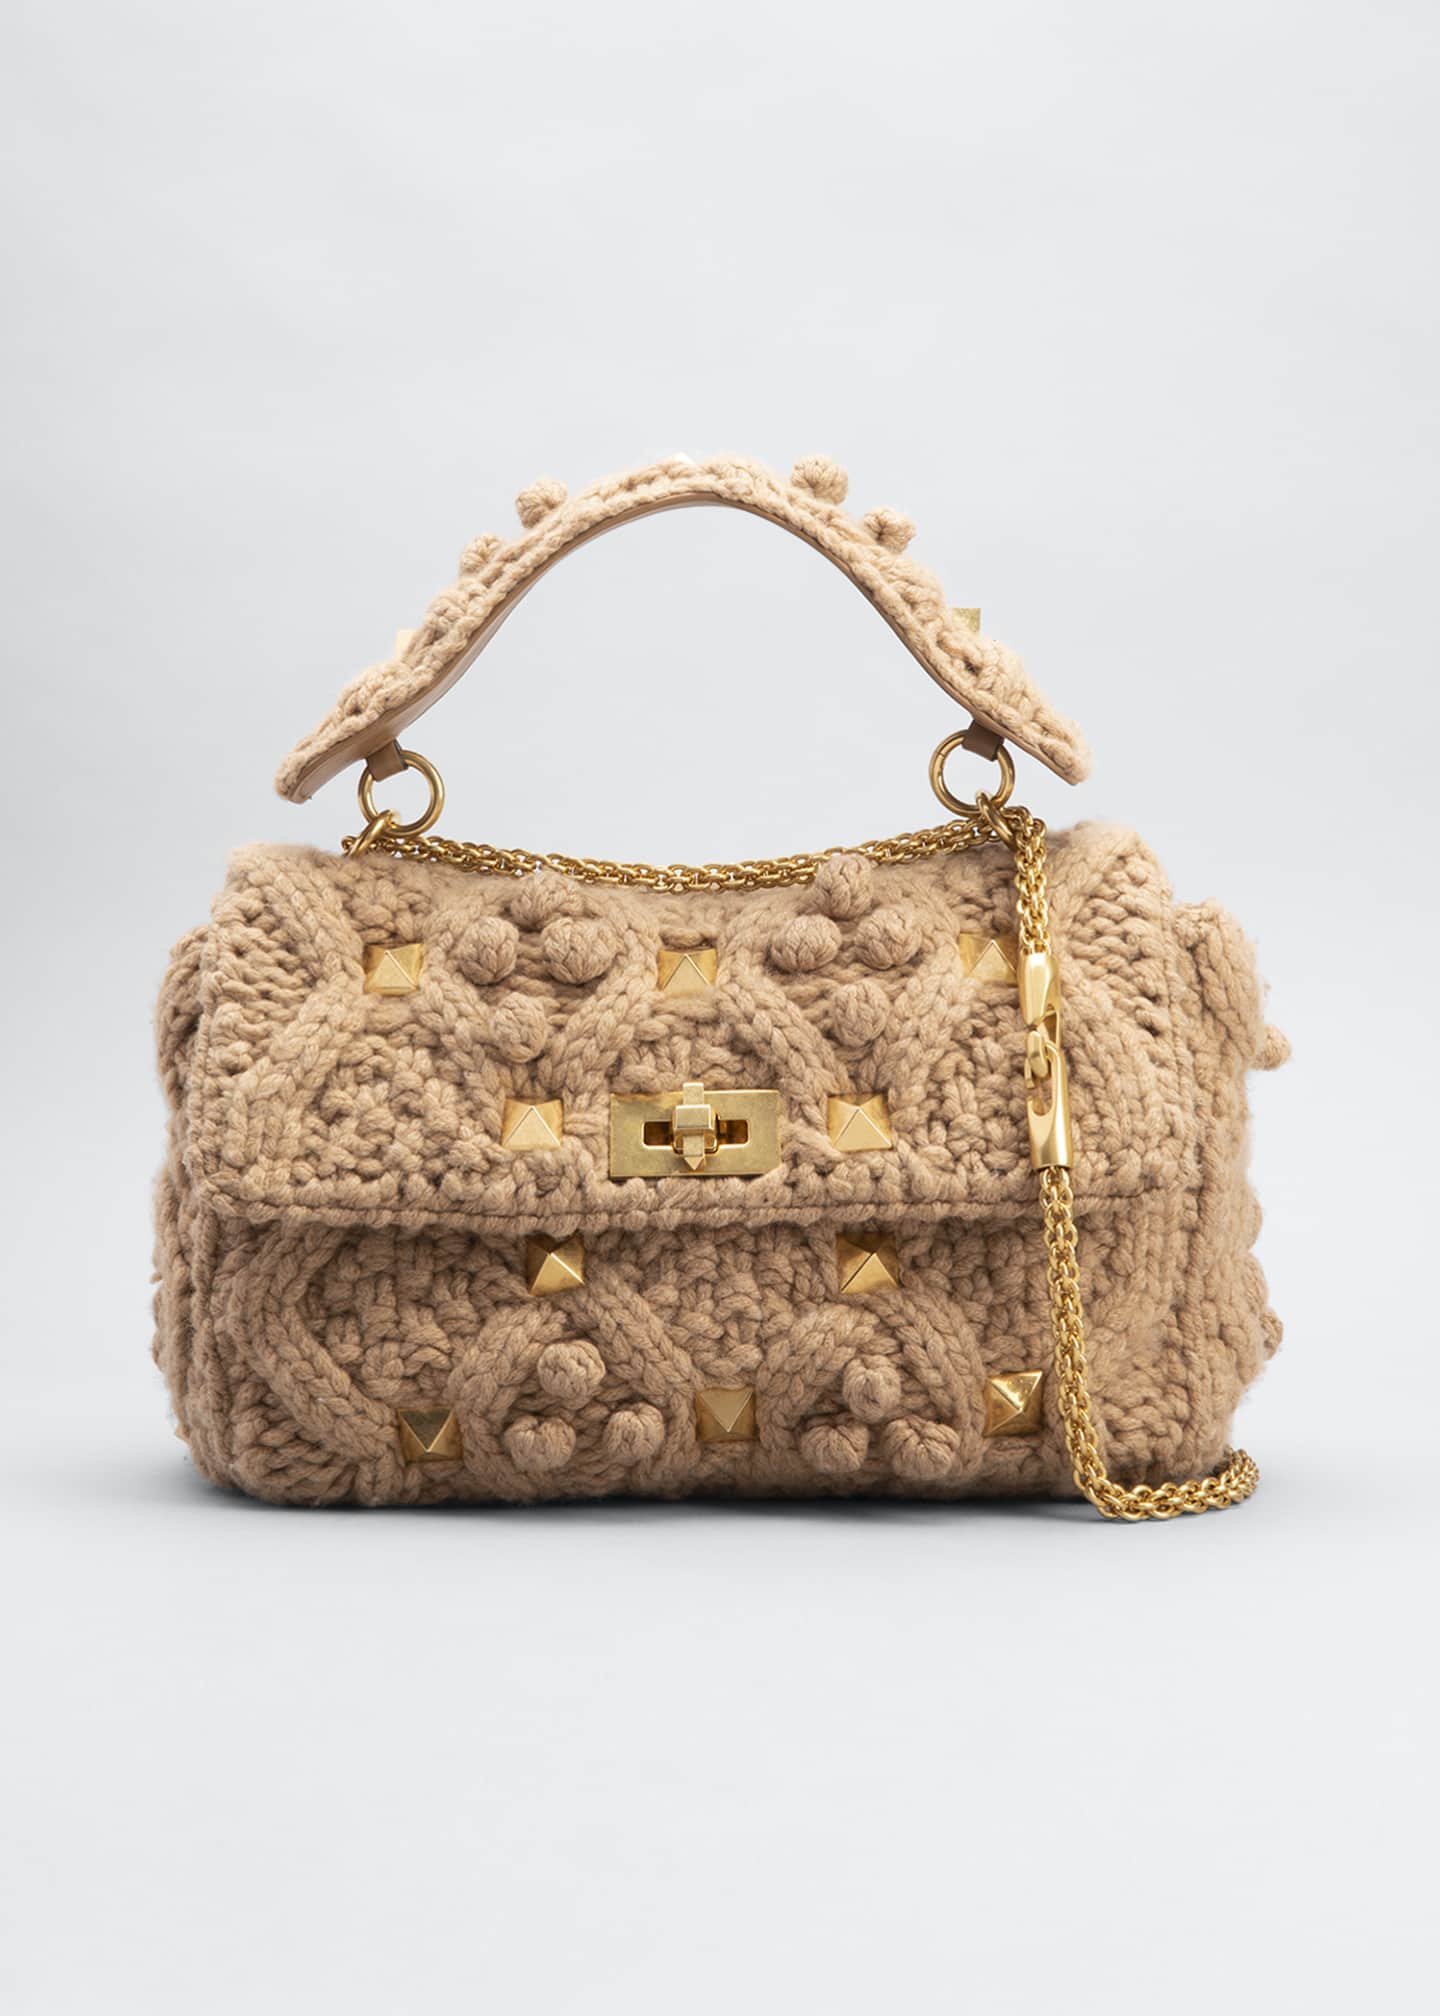 Lovely Italian Handbag - Blogs & Forums